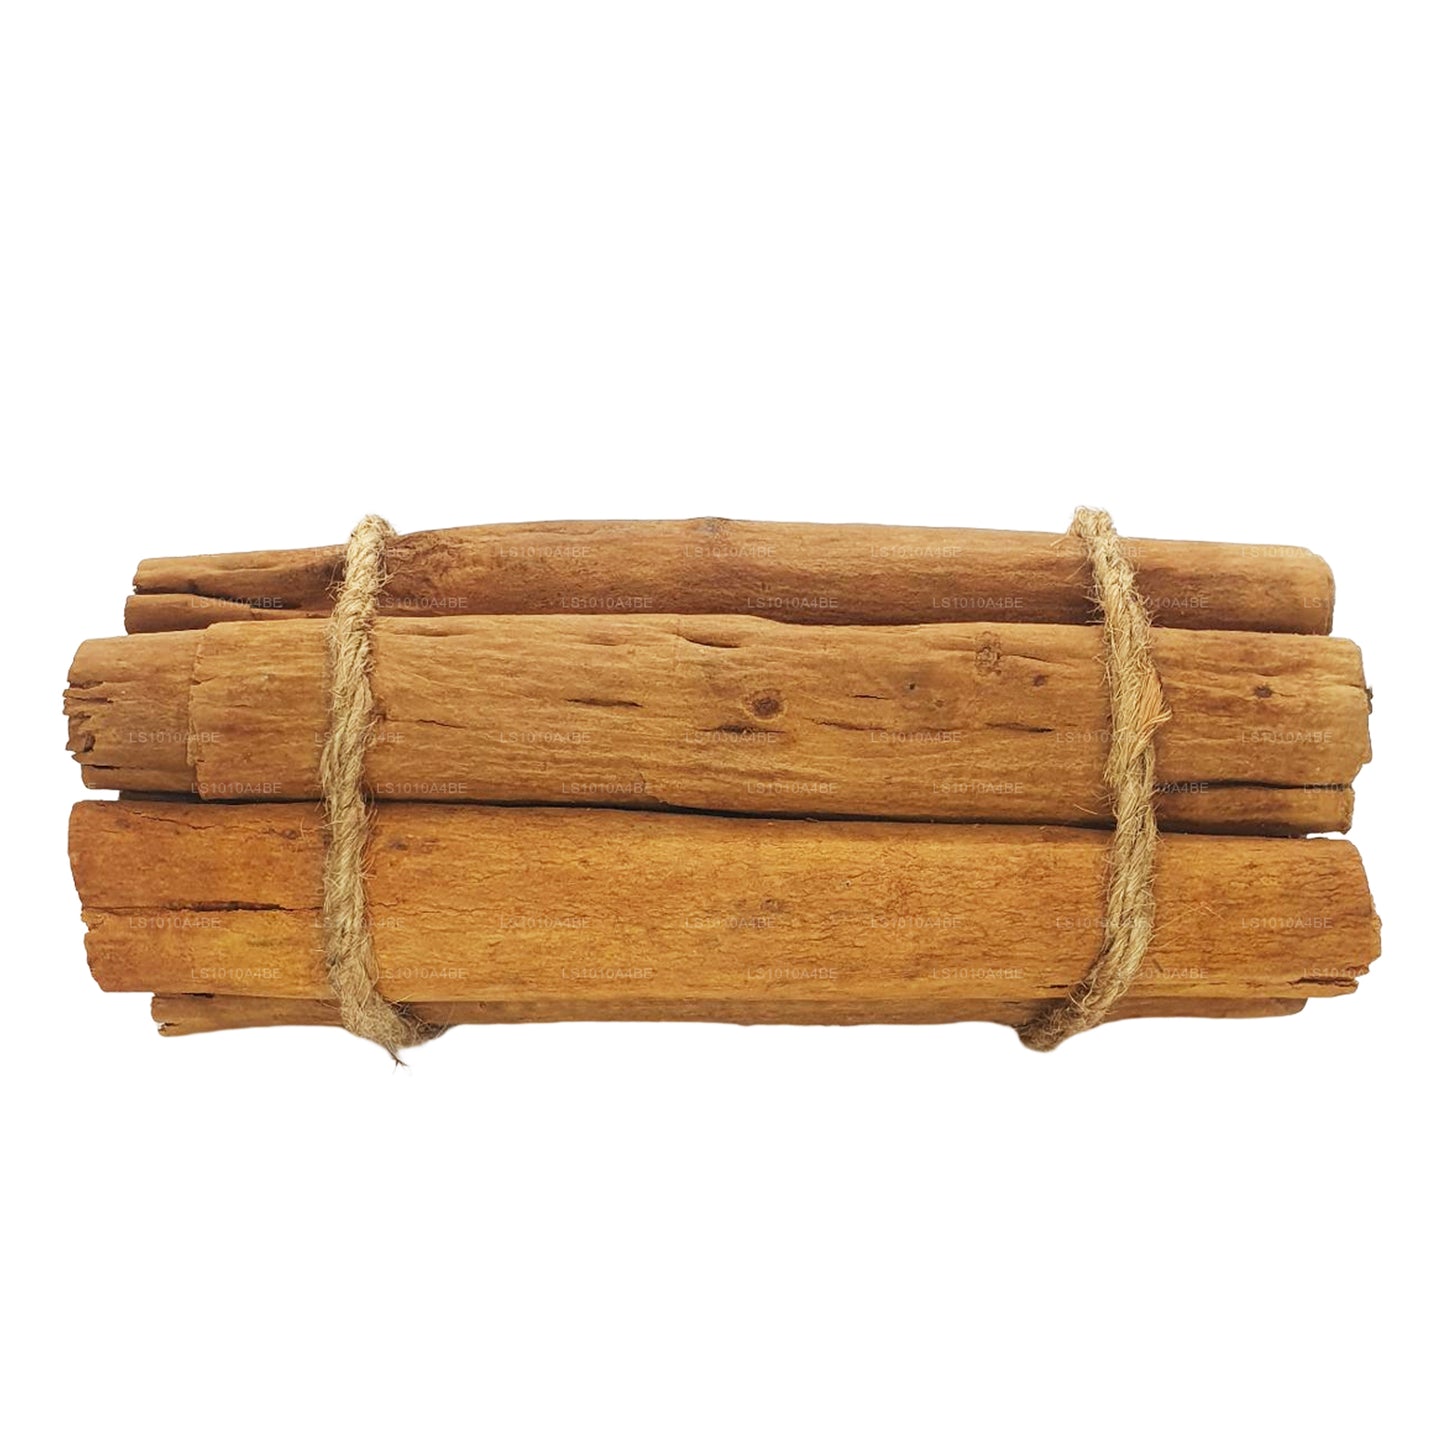 Lakpura “H2 Special” 级锡兰 True Cinnamon Barks Pack